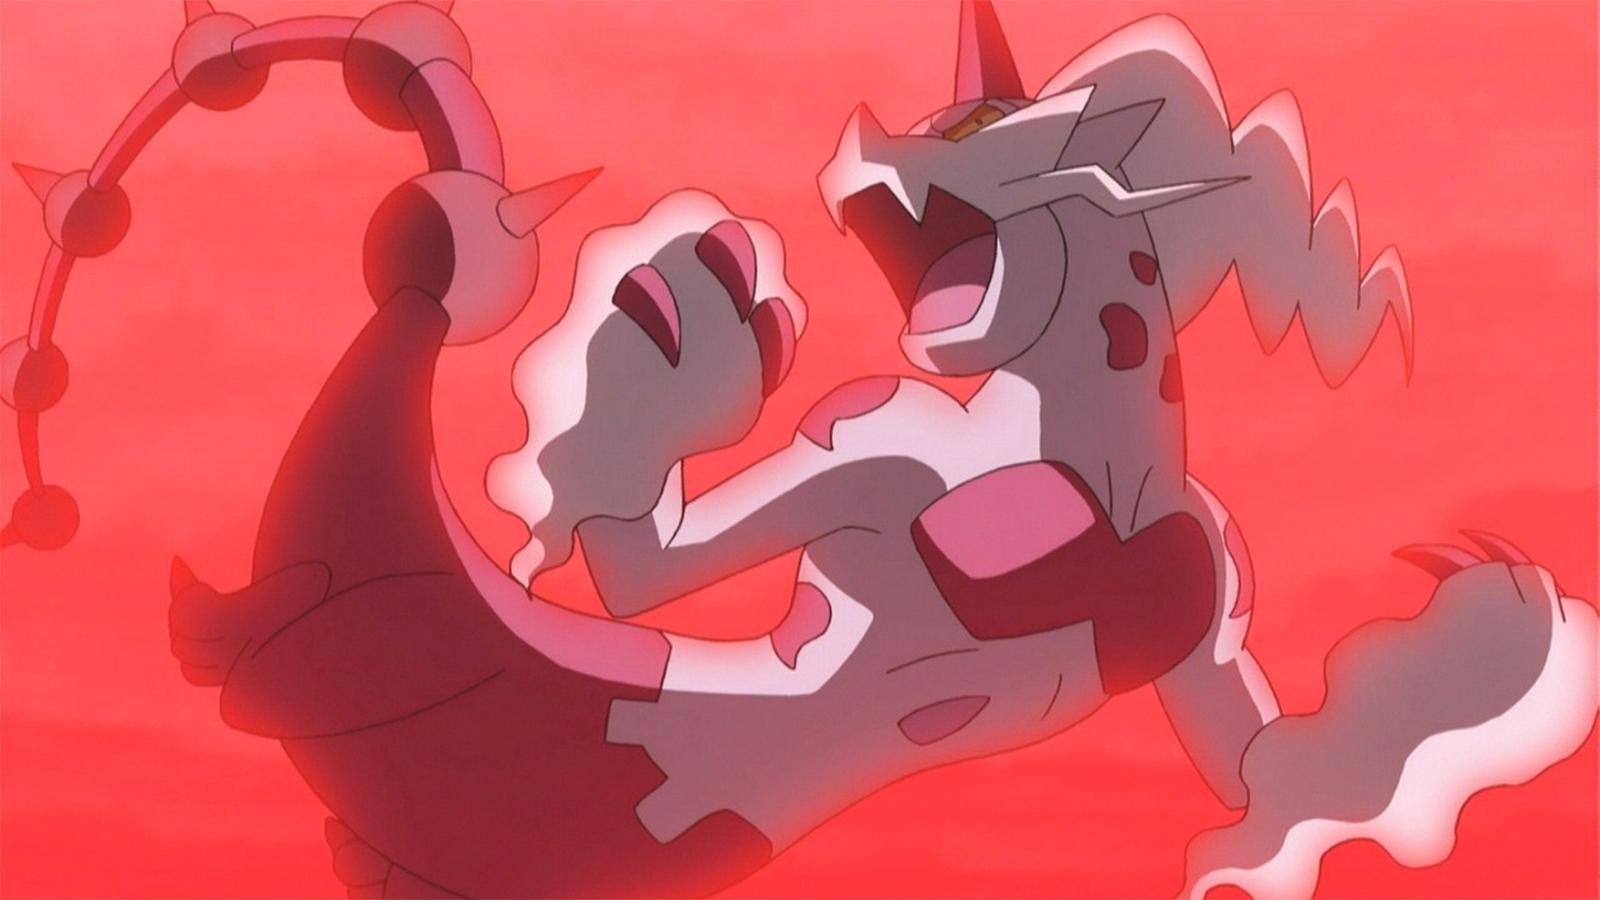 Thundurus Pokémon GO: Fraquezas, melhores counters e como derrotar